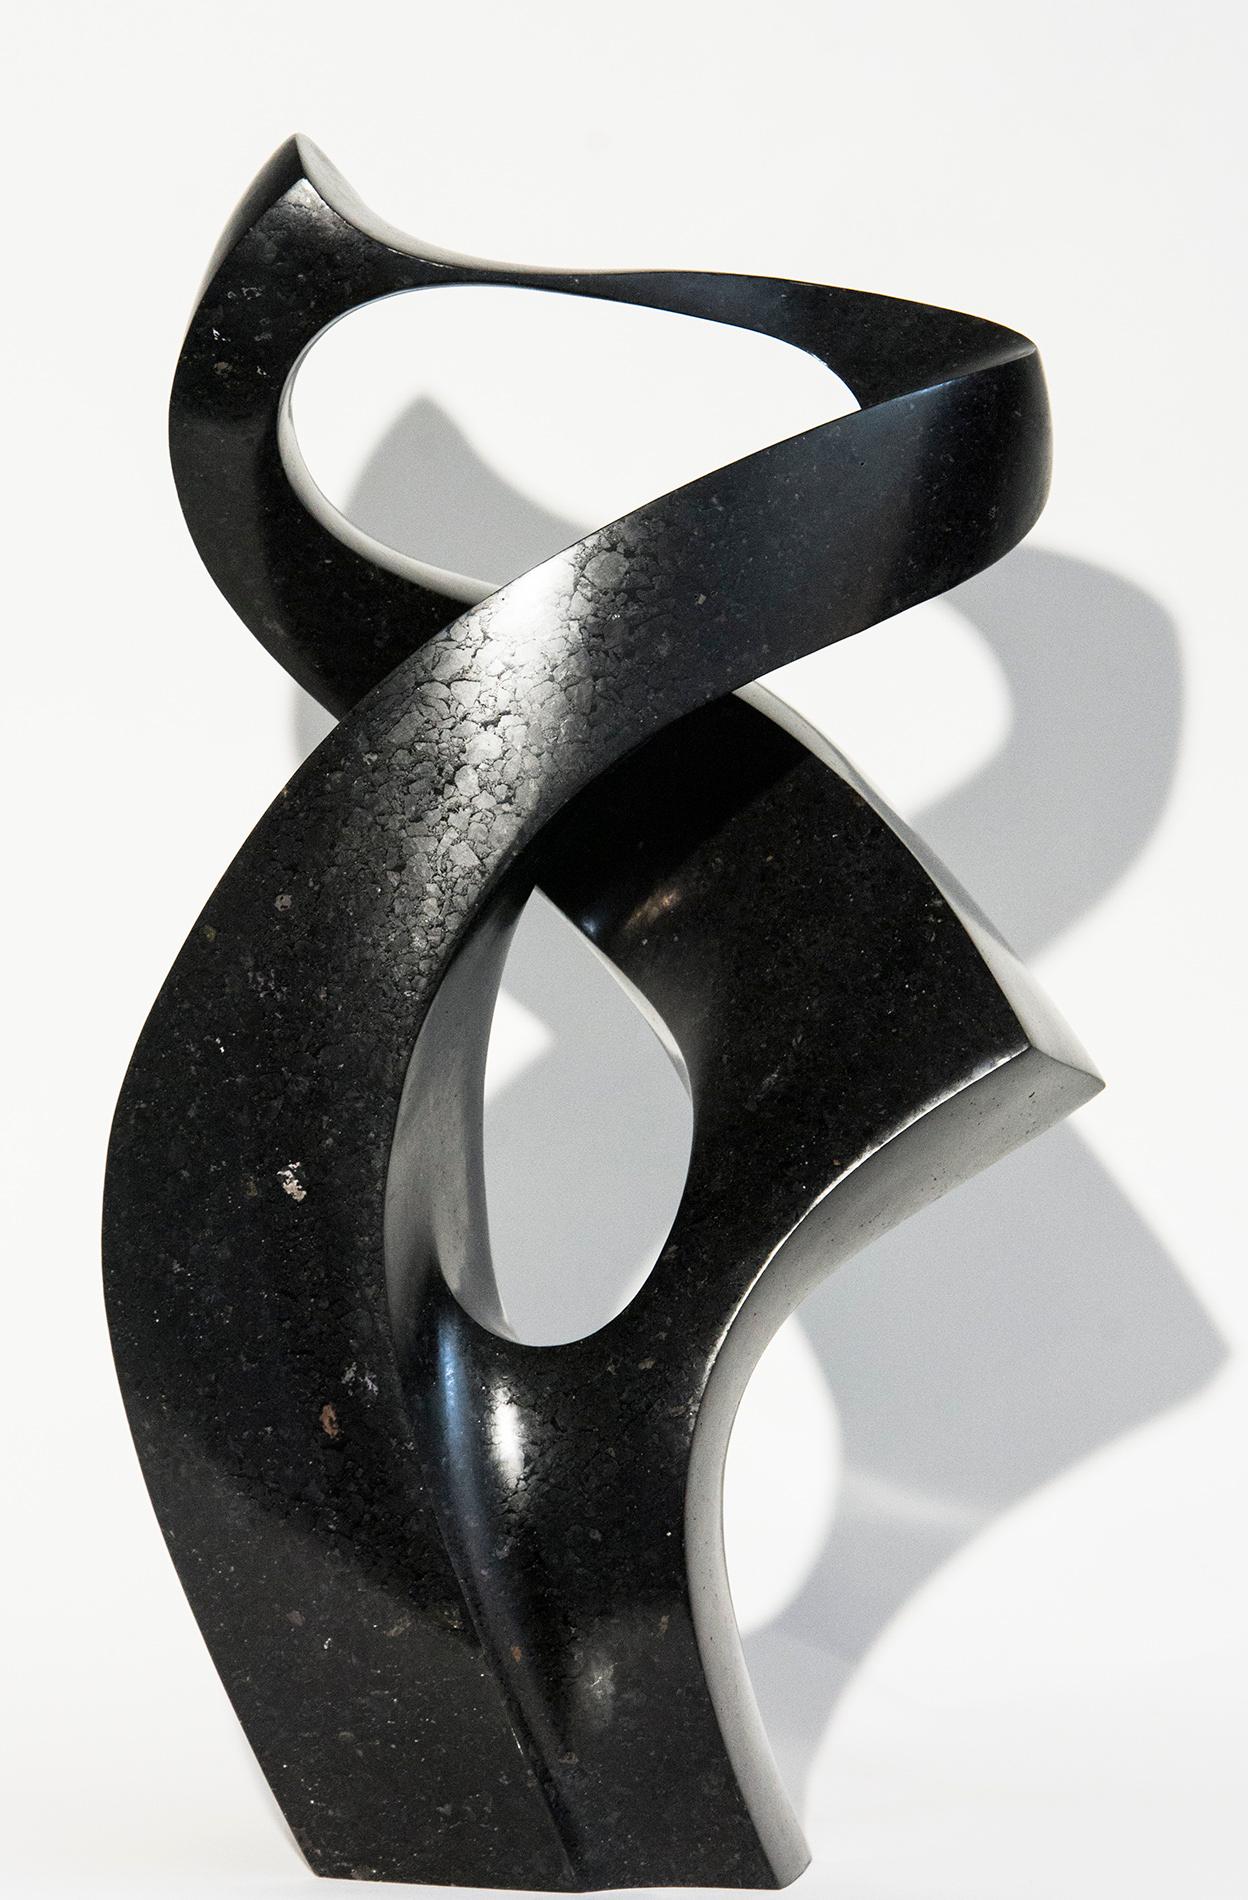 Embrace 4/50 - dunkle, glatte, polierte, abstrakte, schwarze Granitskulptur – Sculpture von Jeremy Guy